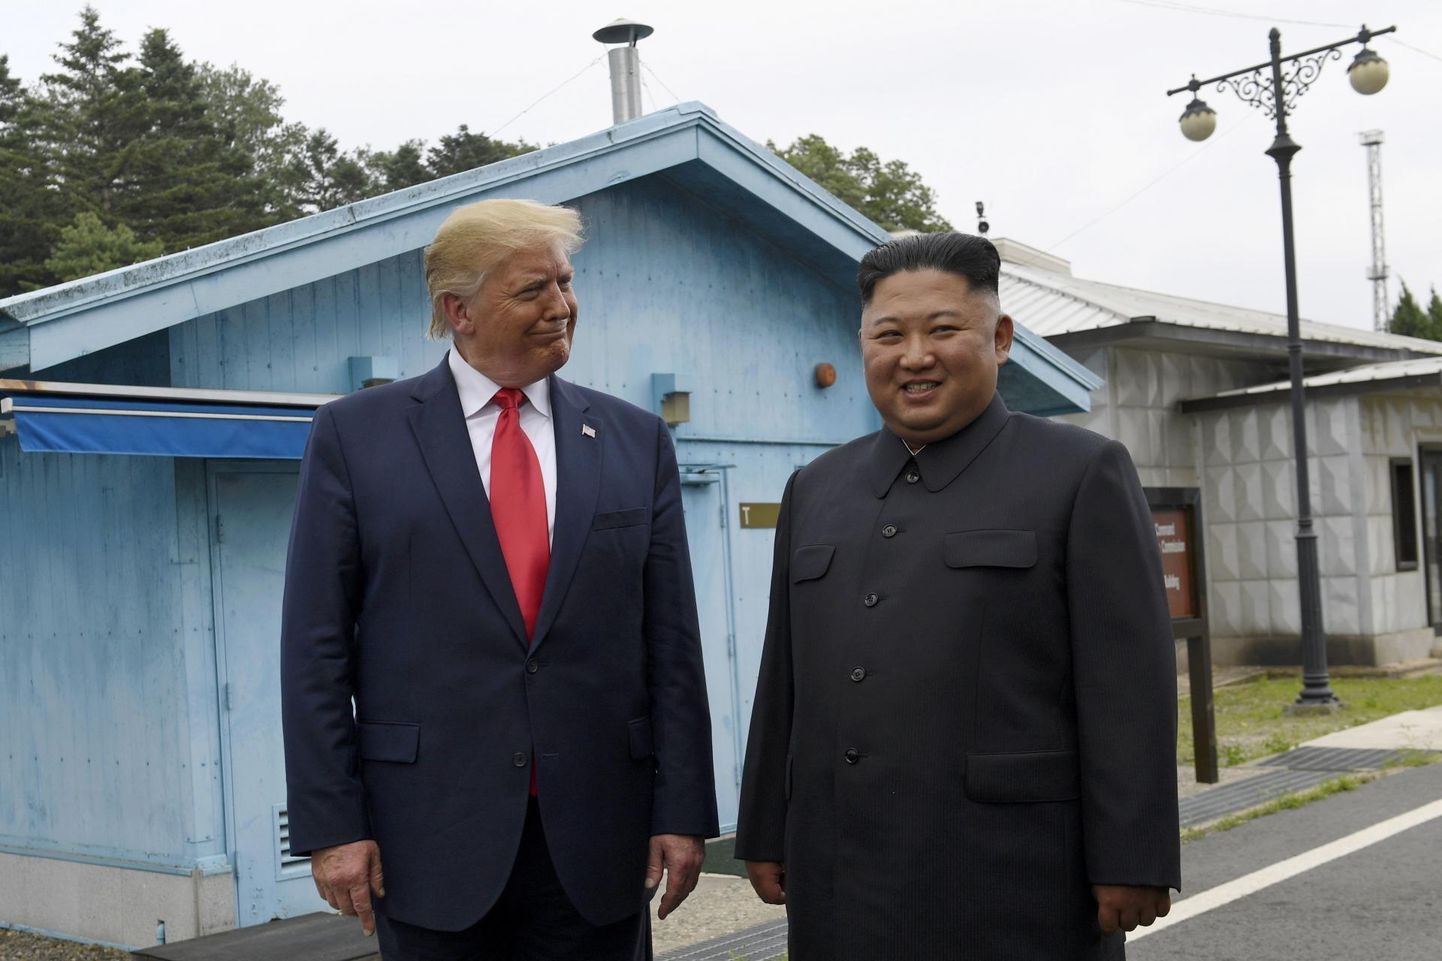 USA president Donald Trump ja Põhja-Korea liider Kim Jong-un kohtusid kahte Koread eraldavas demilitariseeritud tsoonis rahukülana tuntud Panmunjomis. 